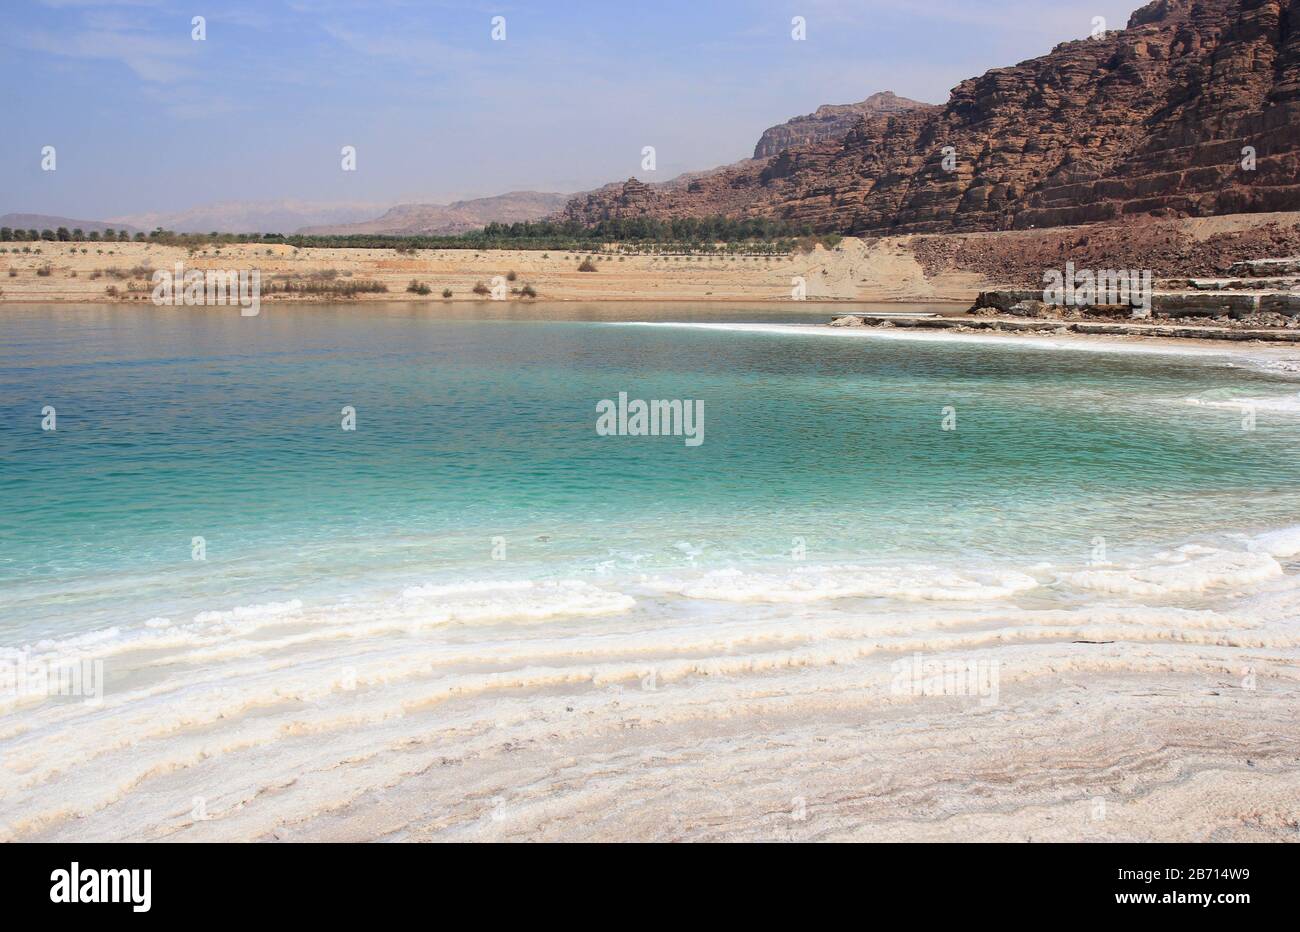 Baie salée sur la route de la mer Morte, la zone la plus basse d'altitude terrestre sur Terre, Jordanie, Asie occidentale Banque D'Images